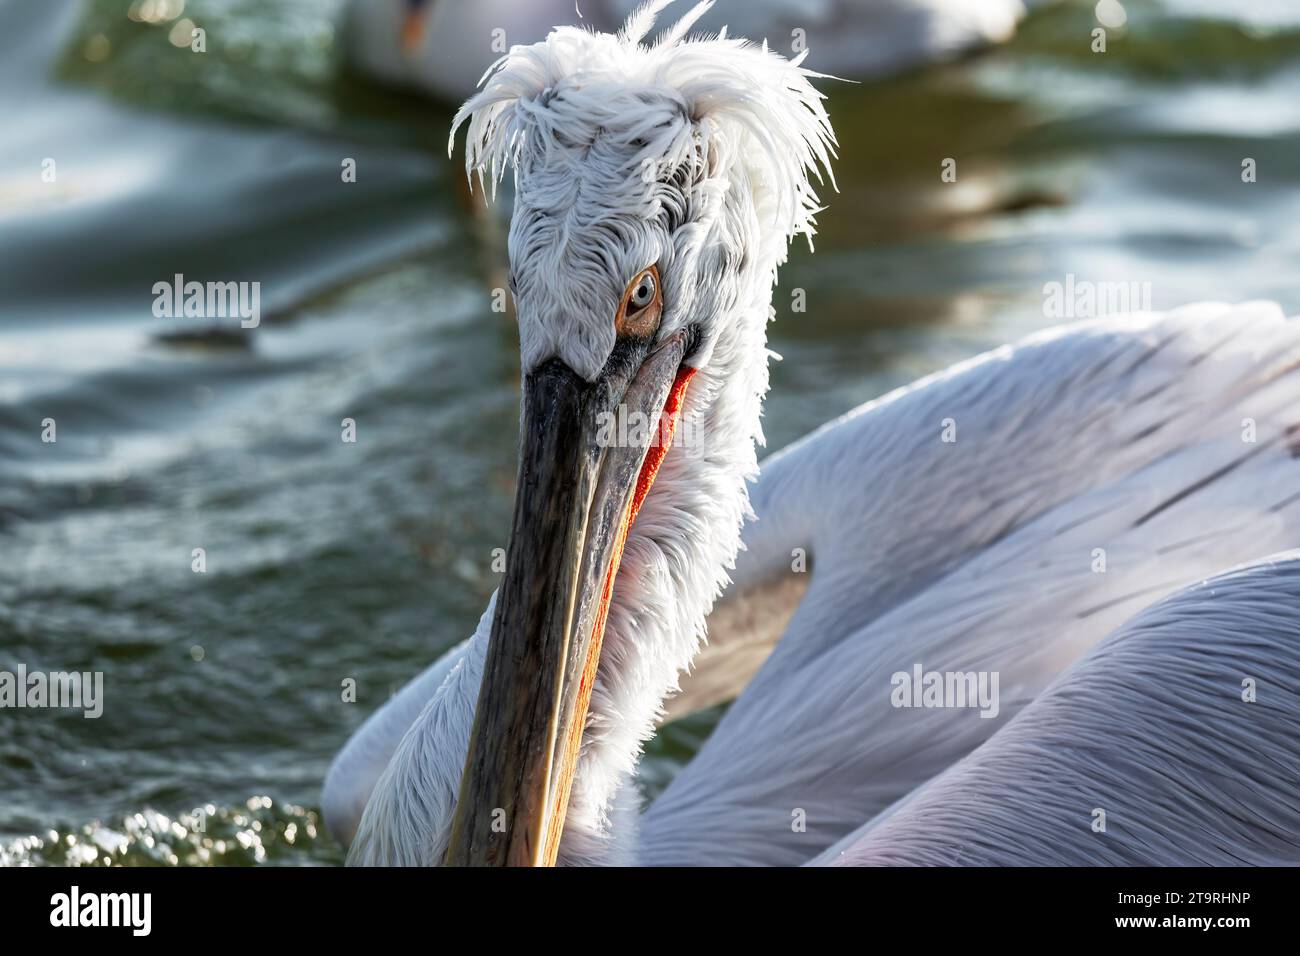 Primo piano di un nido pelicano dalmata maschio sulla superficie d'acqua del lago Kerkini, nella regione di Serres, Macedonia, Grecia, Europa. Foto Stock